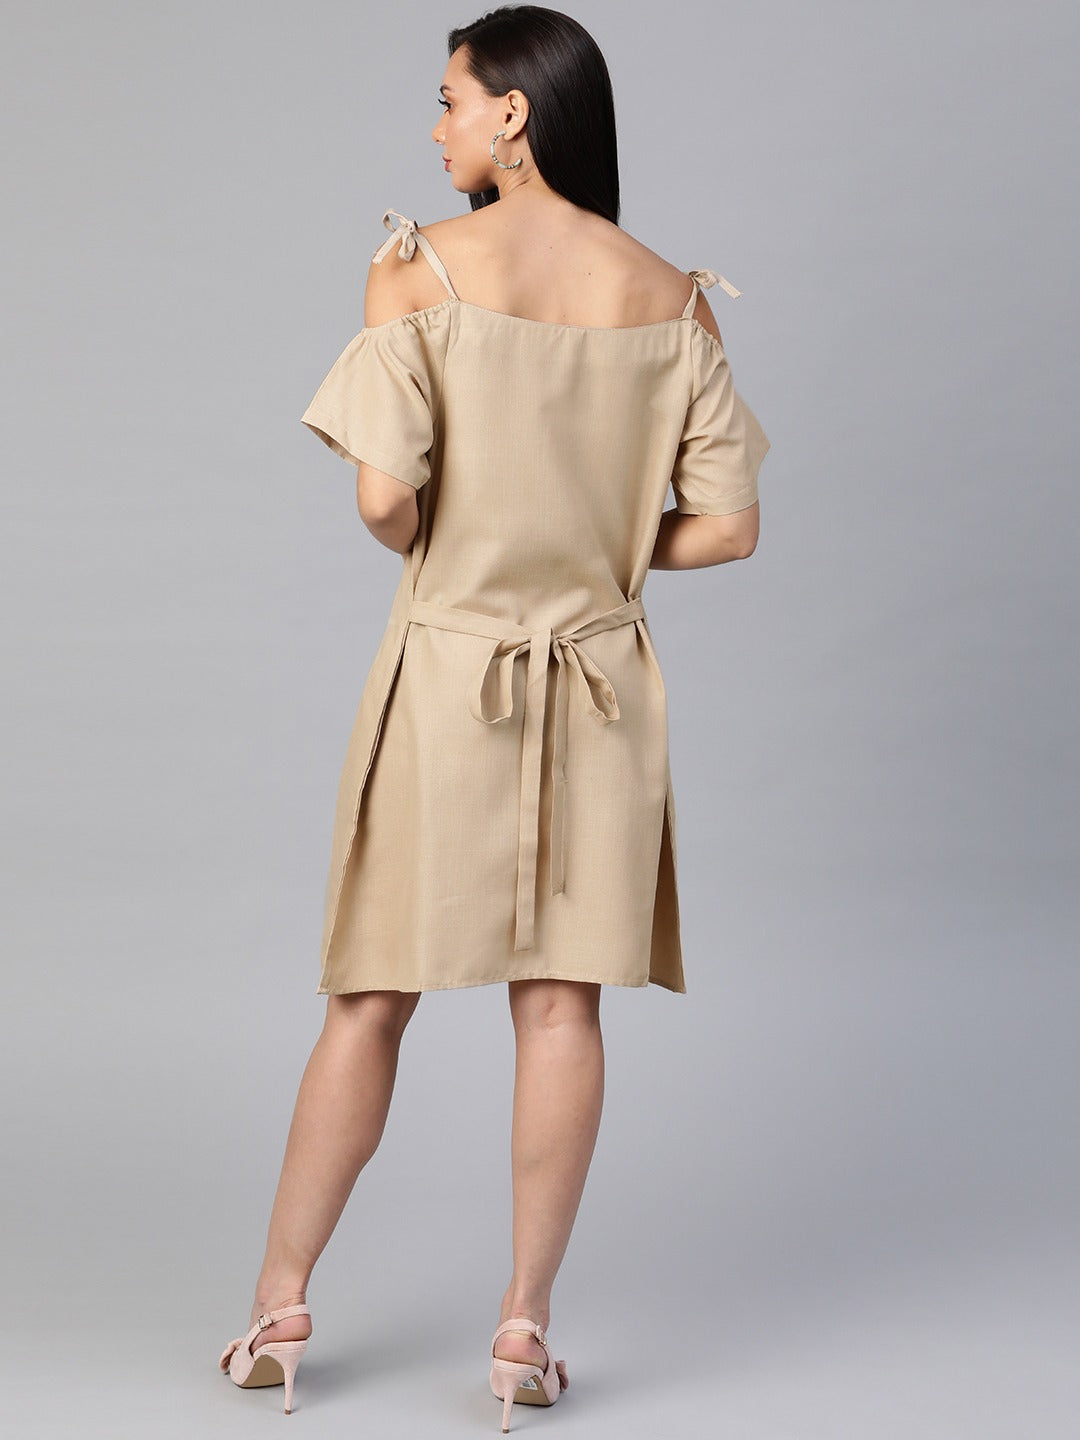 Cottinfab Beige Solid Pure Cotton A-Line Dress